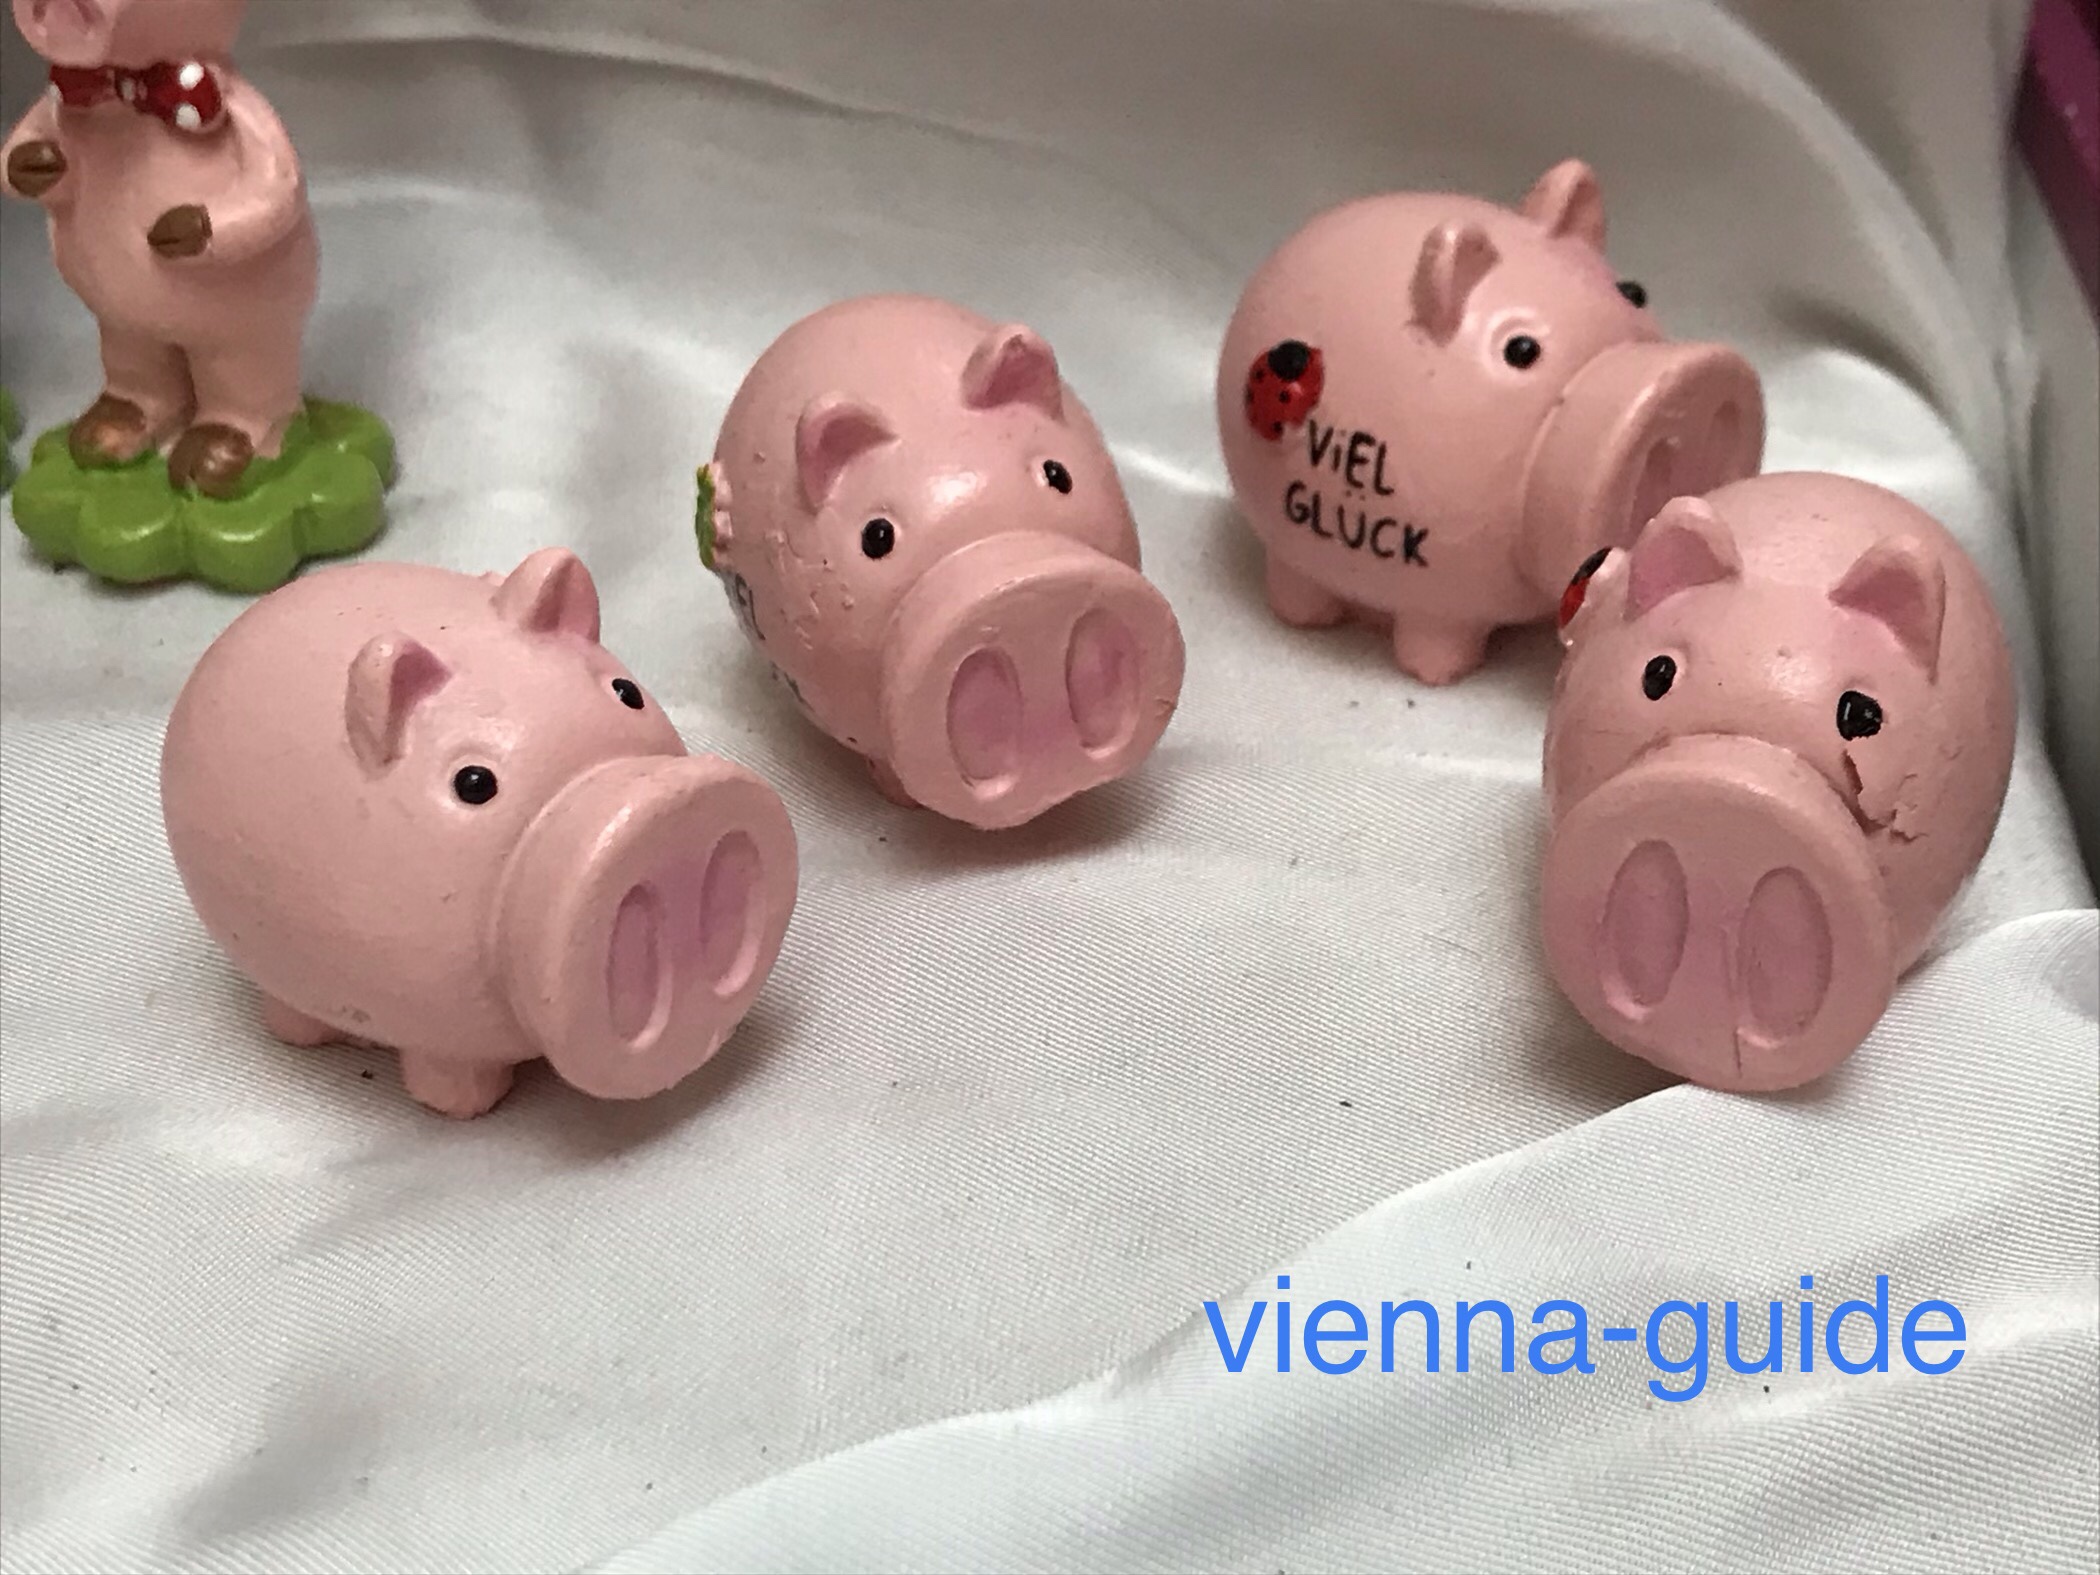 ピンクの豚ちゃんを年末 年始に贈ろう 現地ガイド発信 ウィーン最新情報